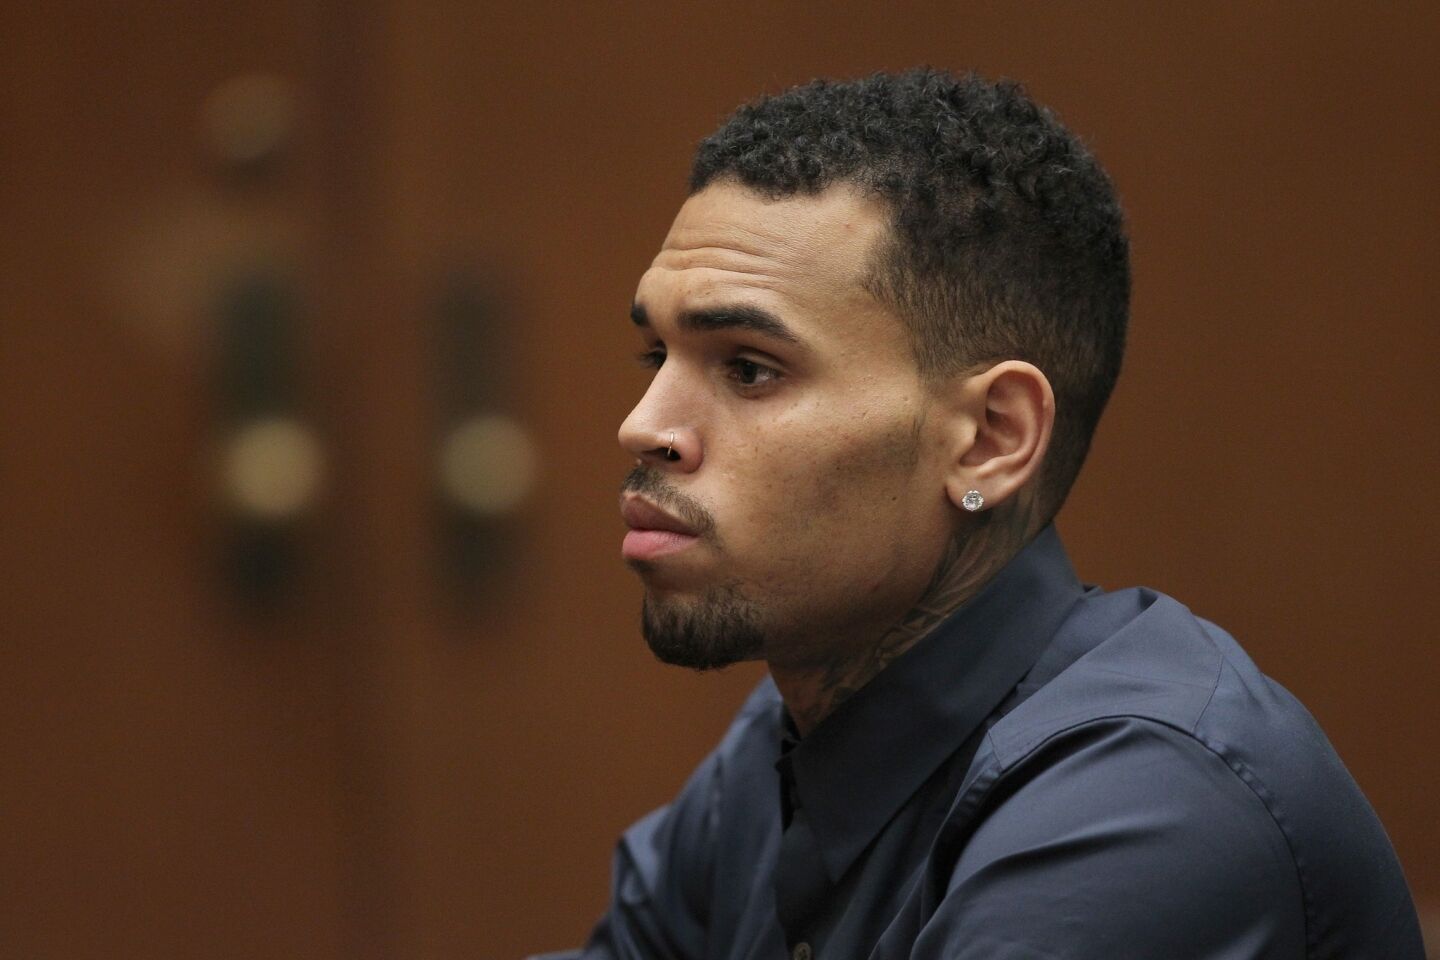 Chris Brown arrested for violating probation